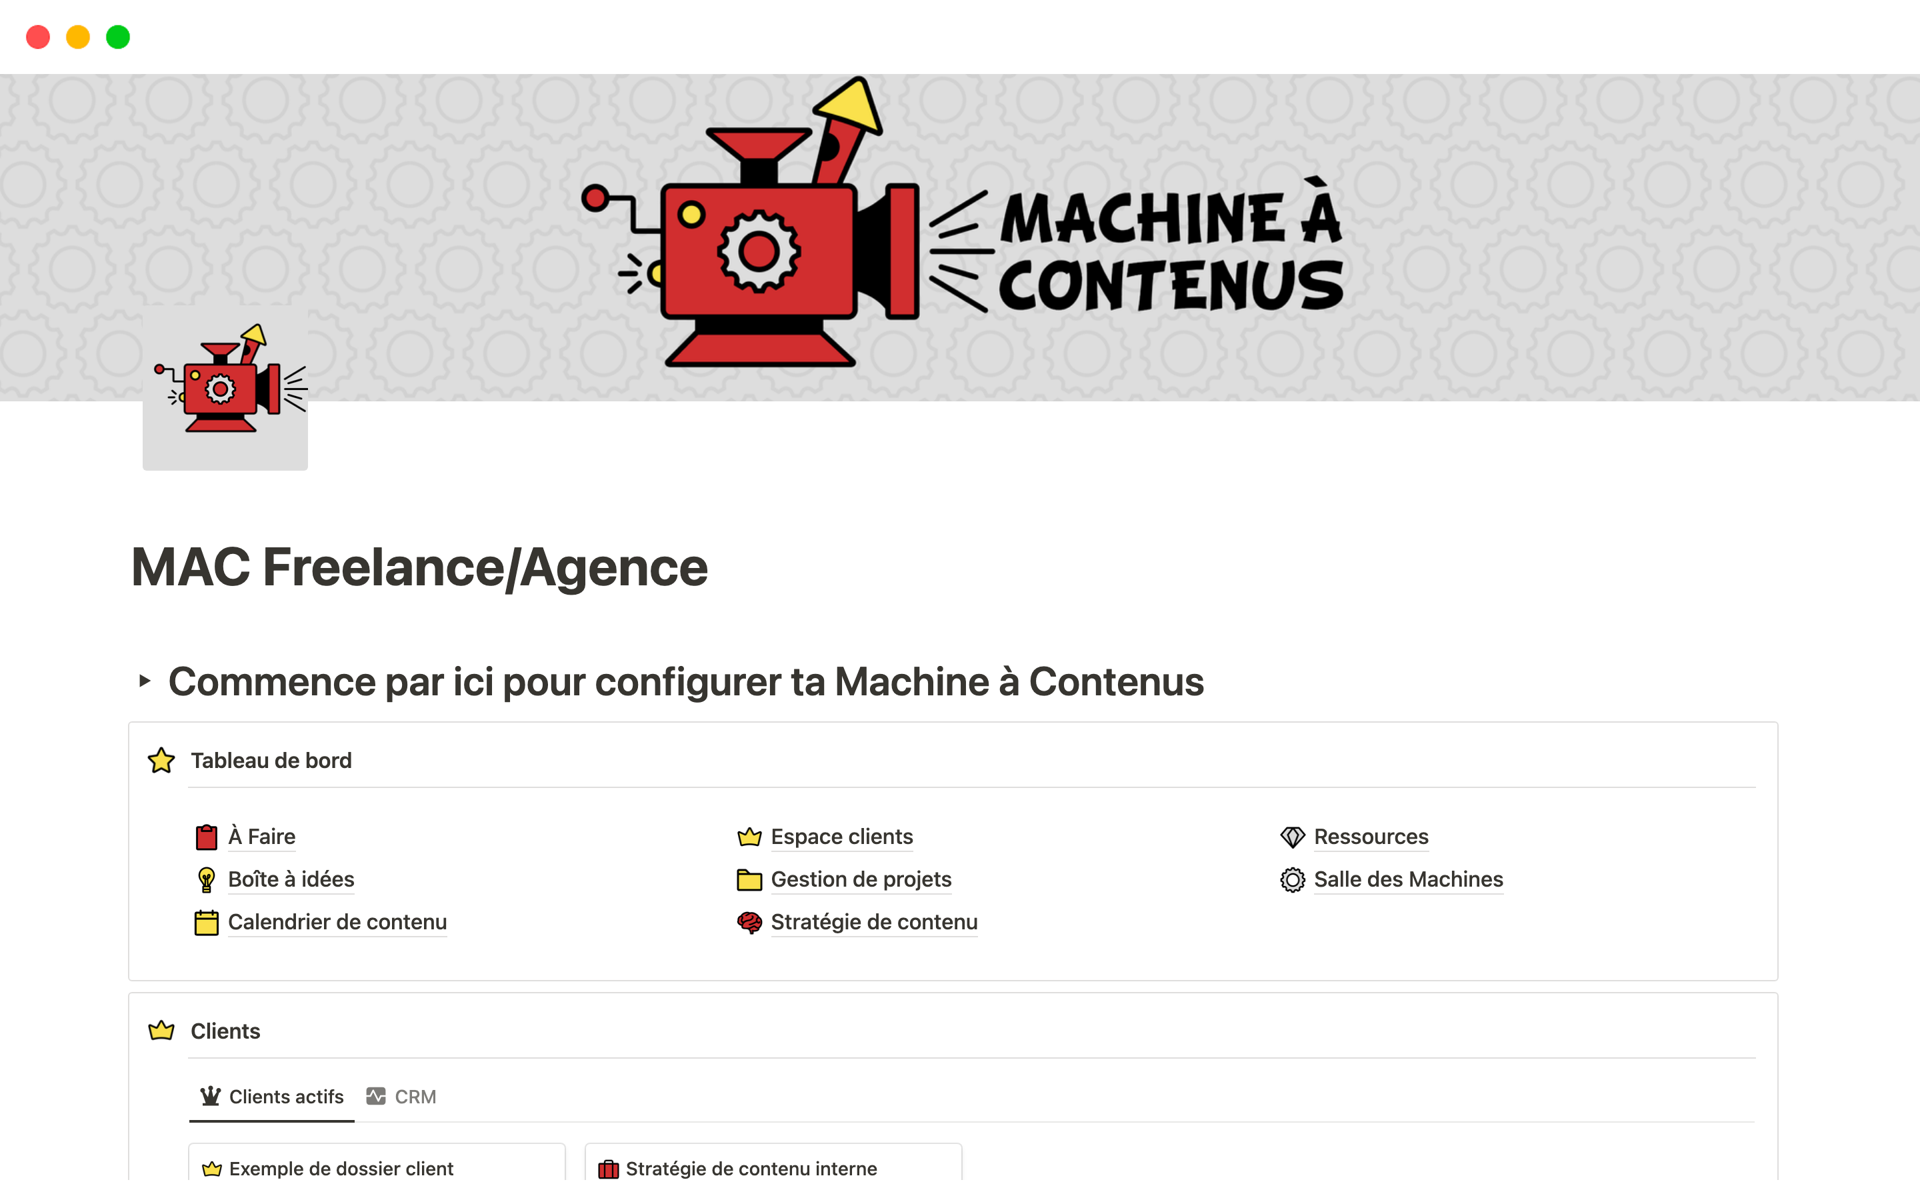 Vista previa de una plantilla para MAC Freelance/Agence